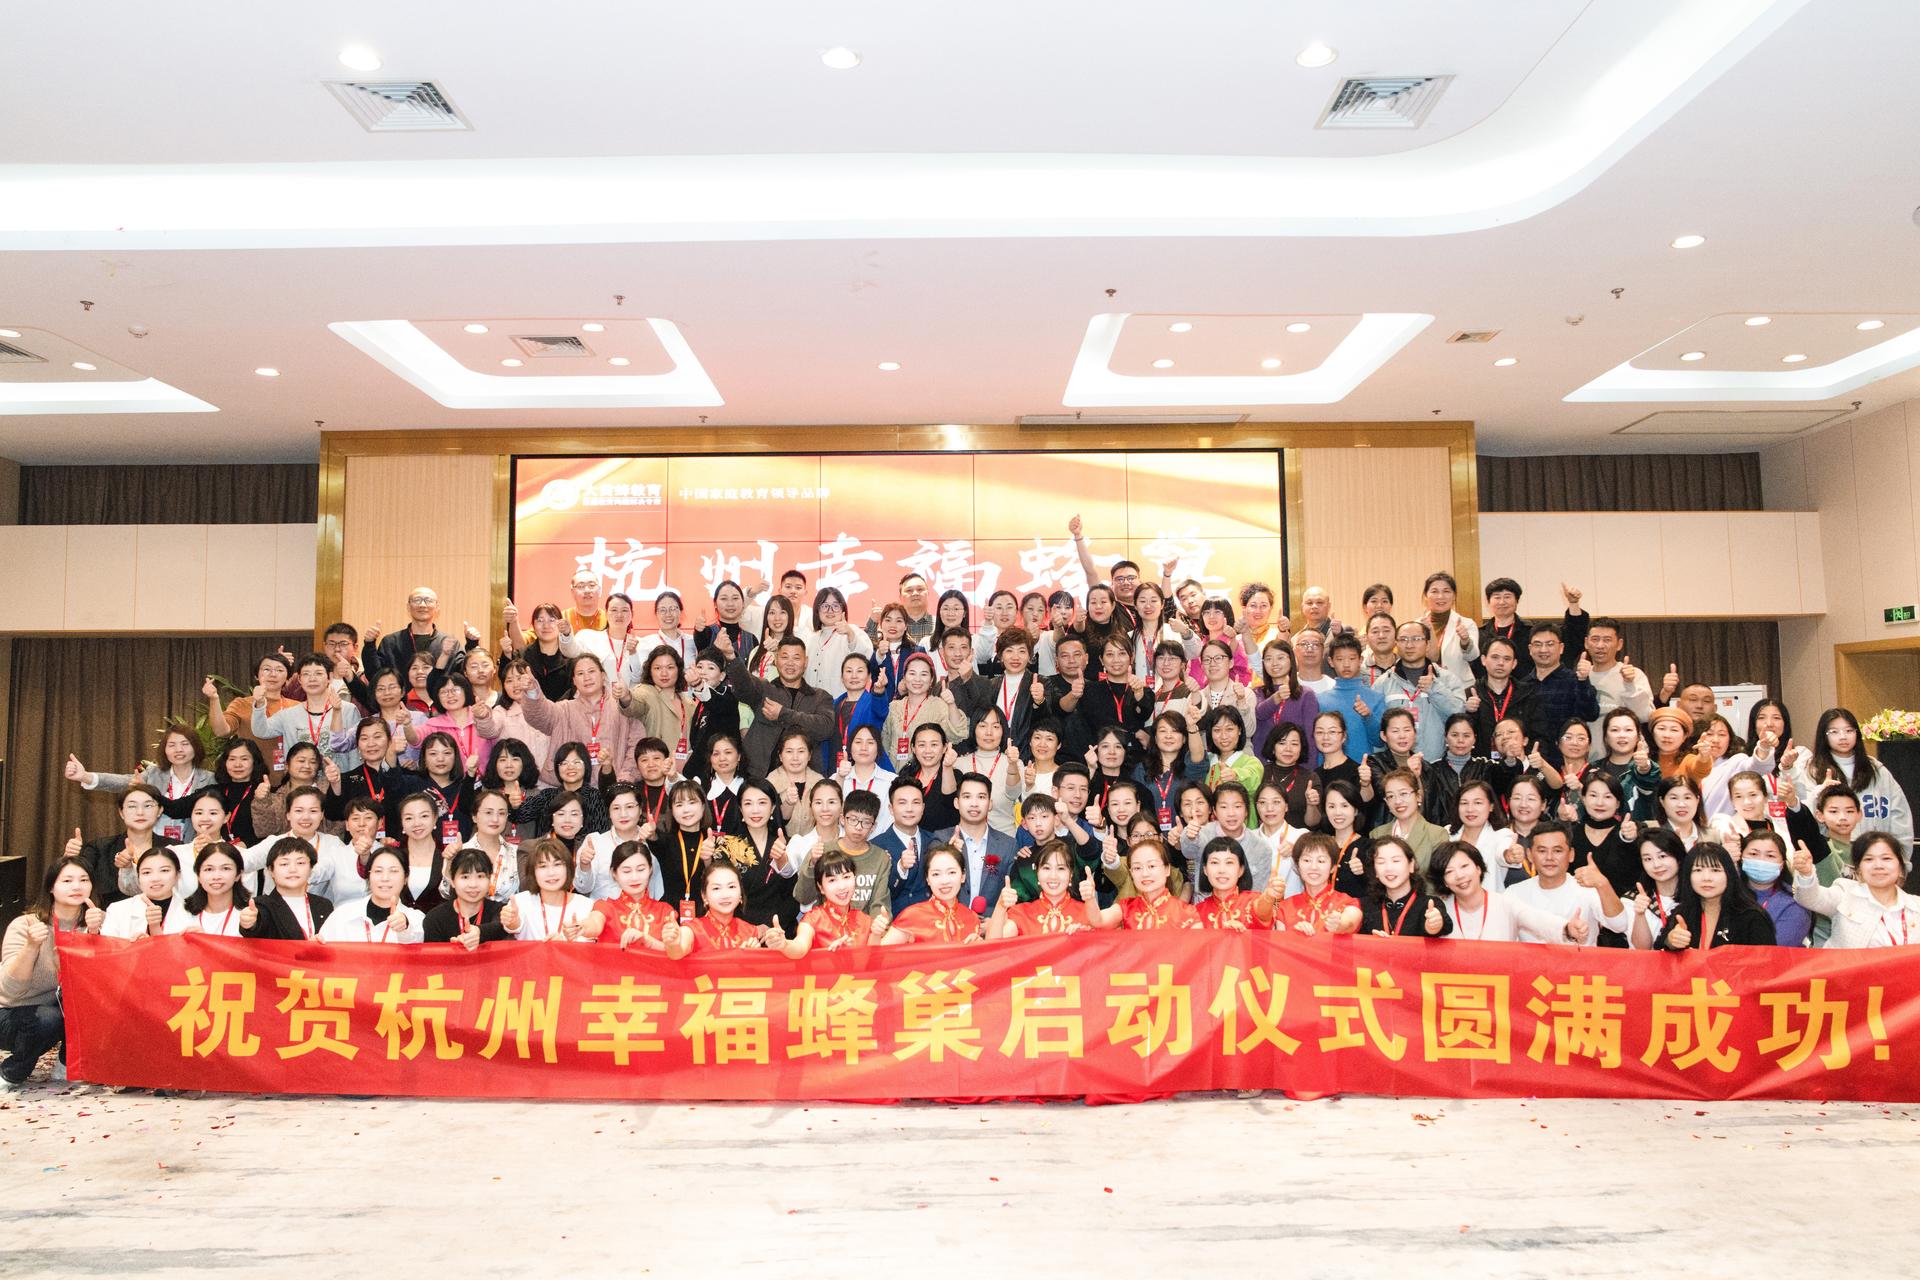 祝贺杭州幸福蜂巢启动仪式圆满成功！